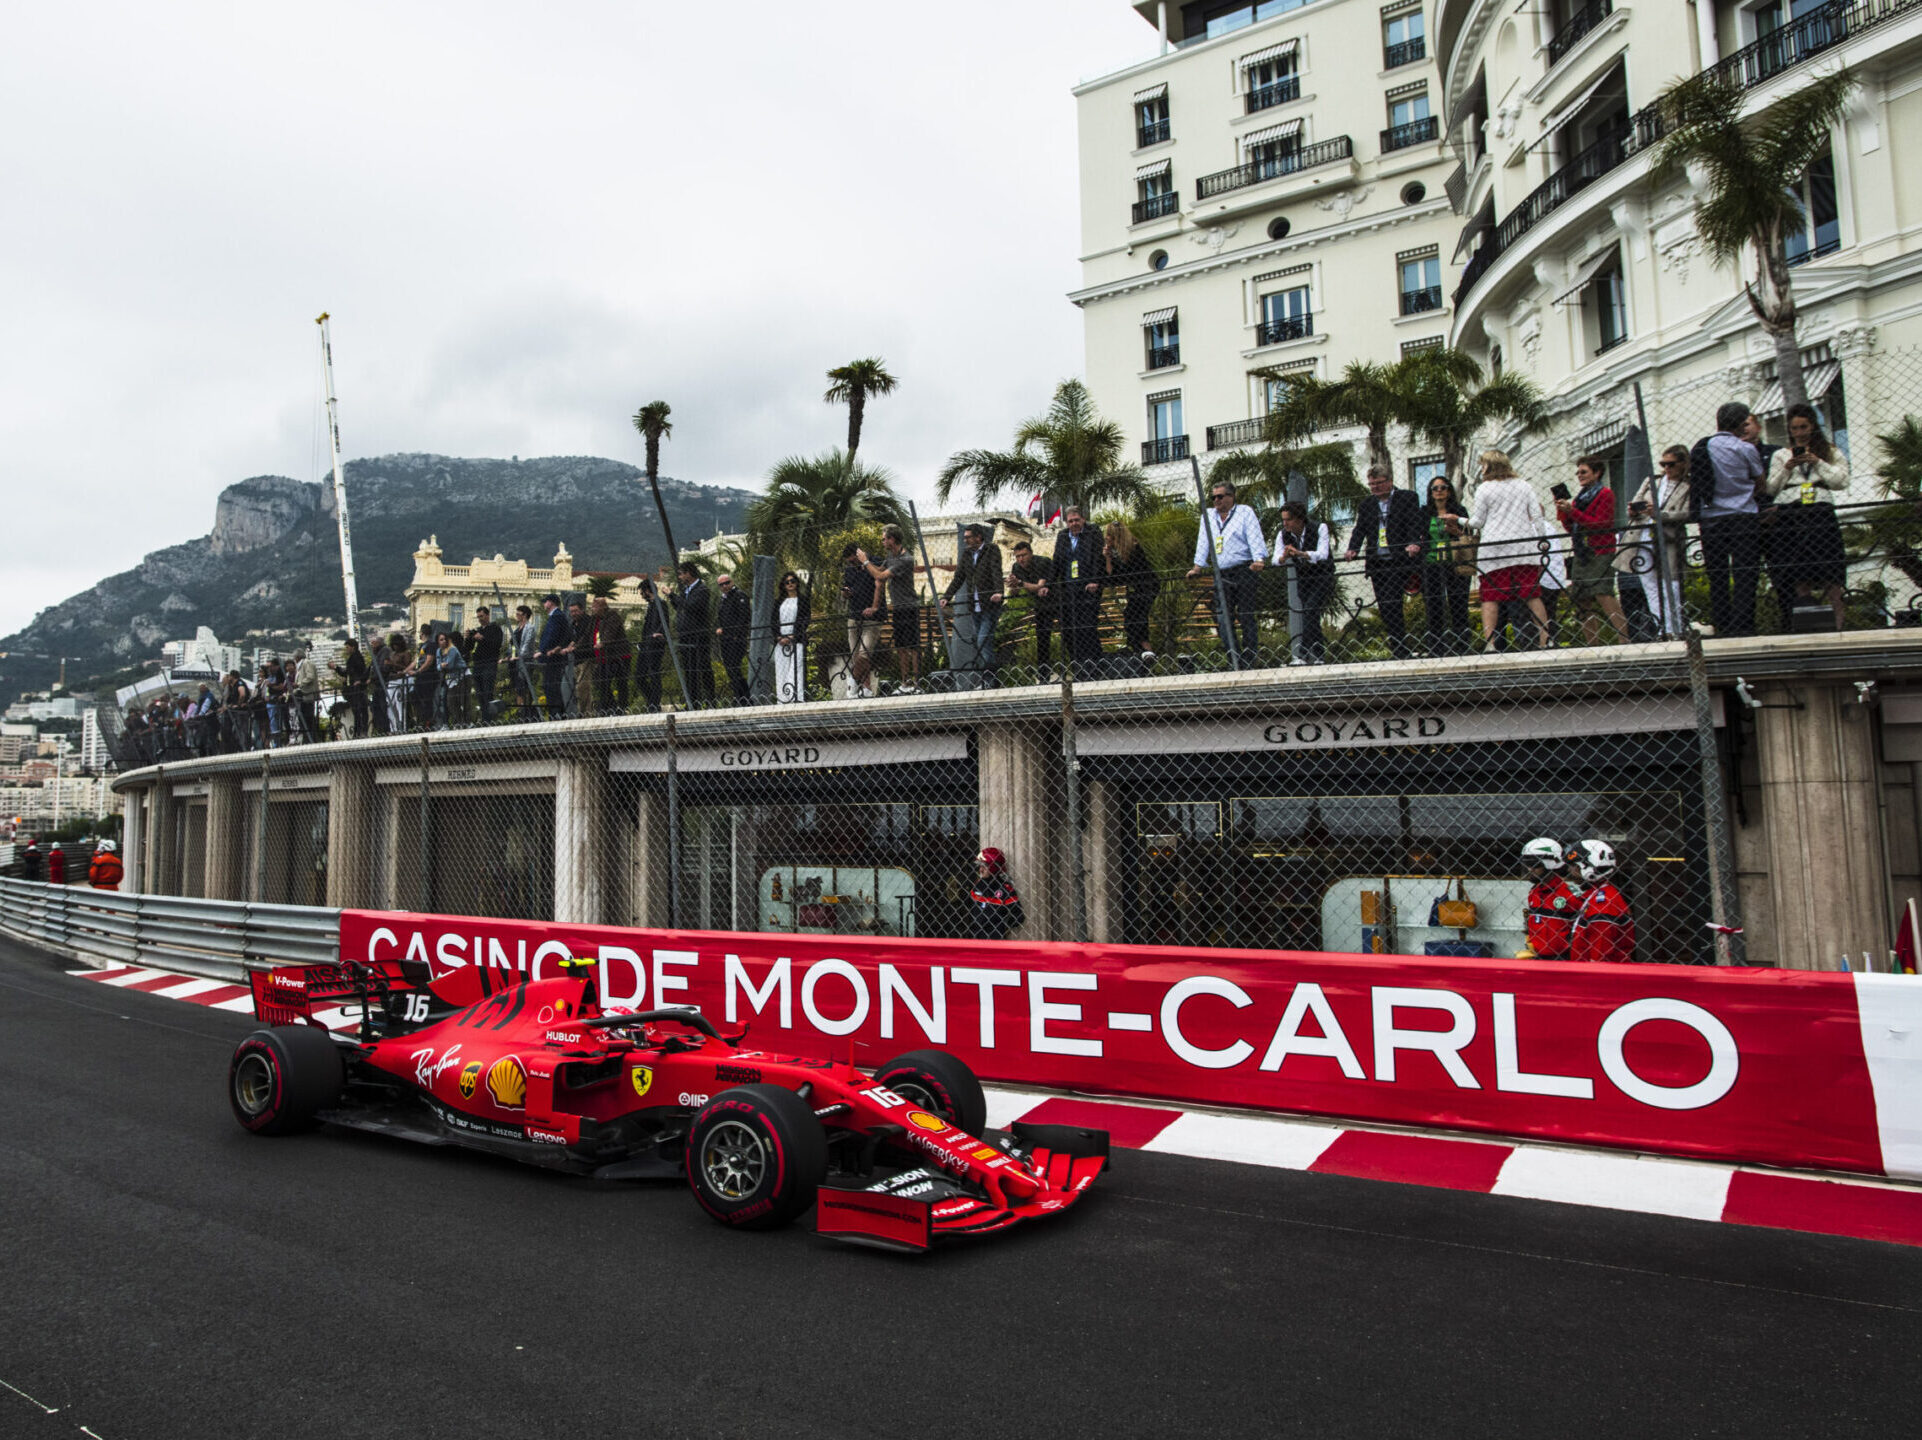 Grand Prix, Monaco